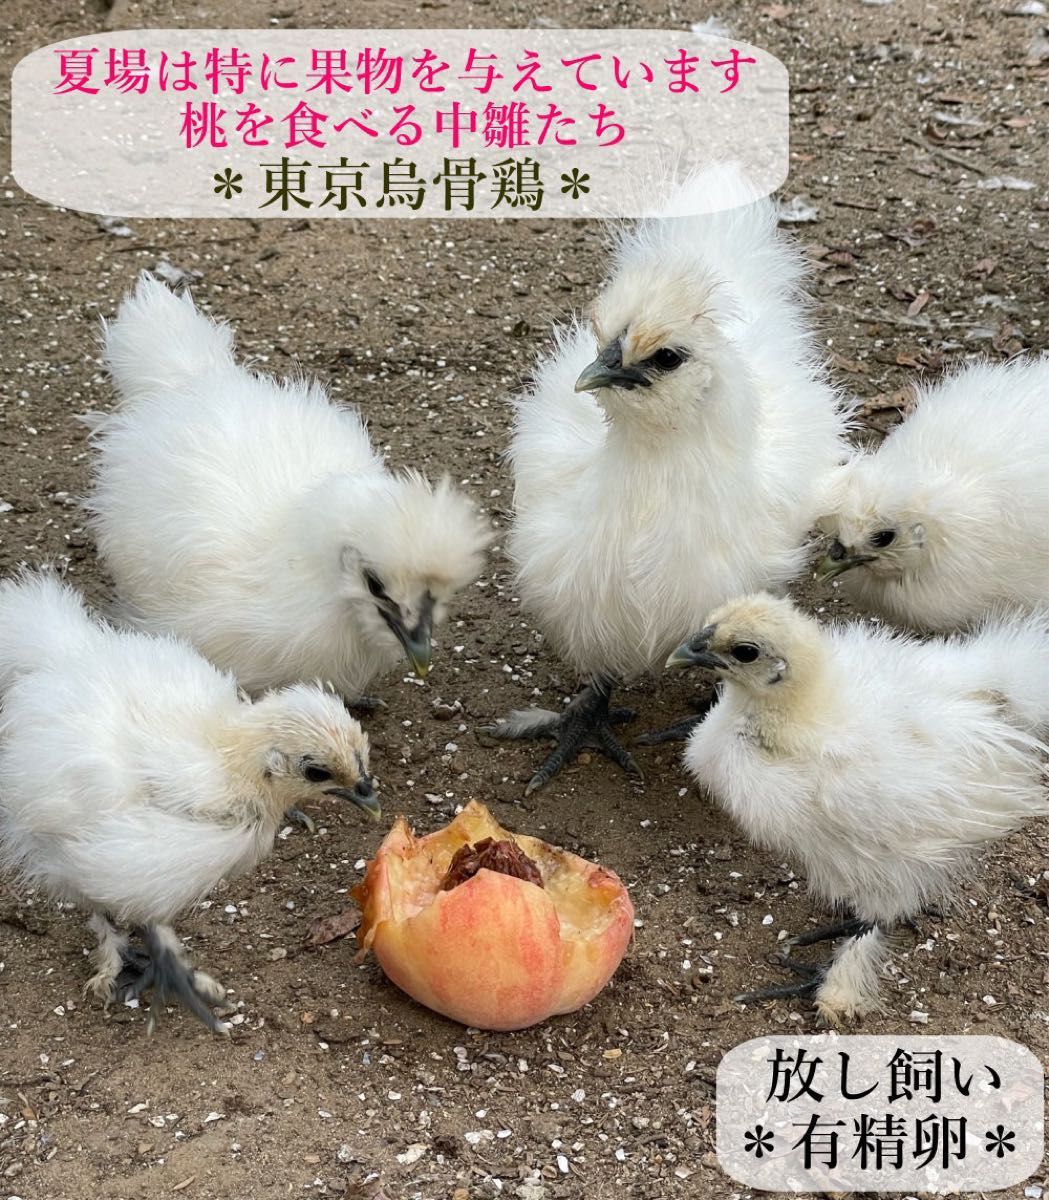 東京烏骨鶏 烏骨鶏 12個 有精卵 種卵 食用 放し飼い ふわふわ もこもこ